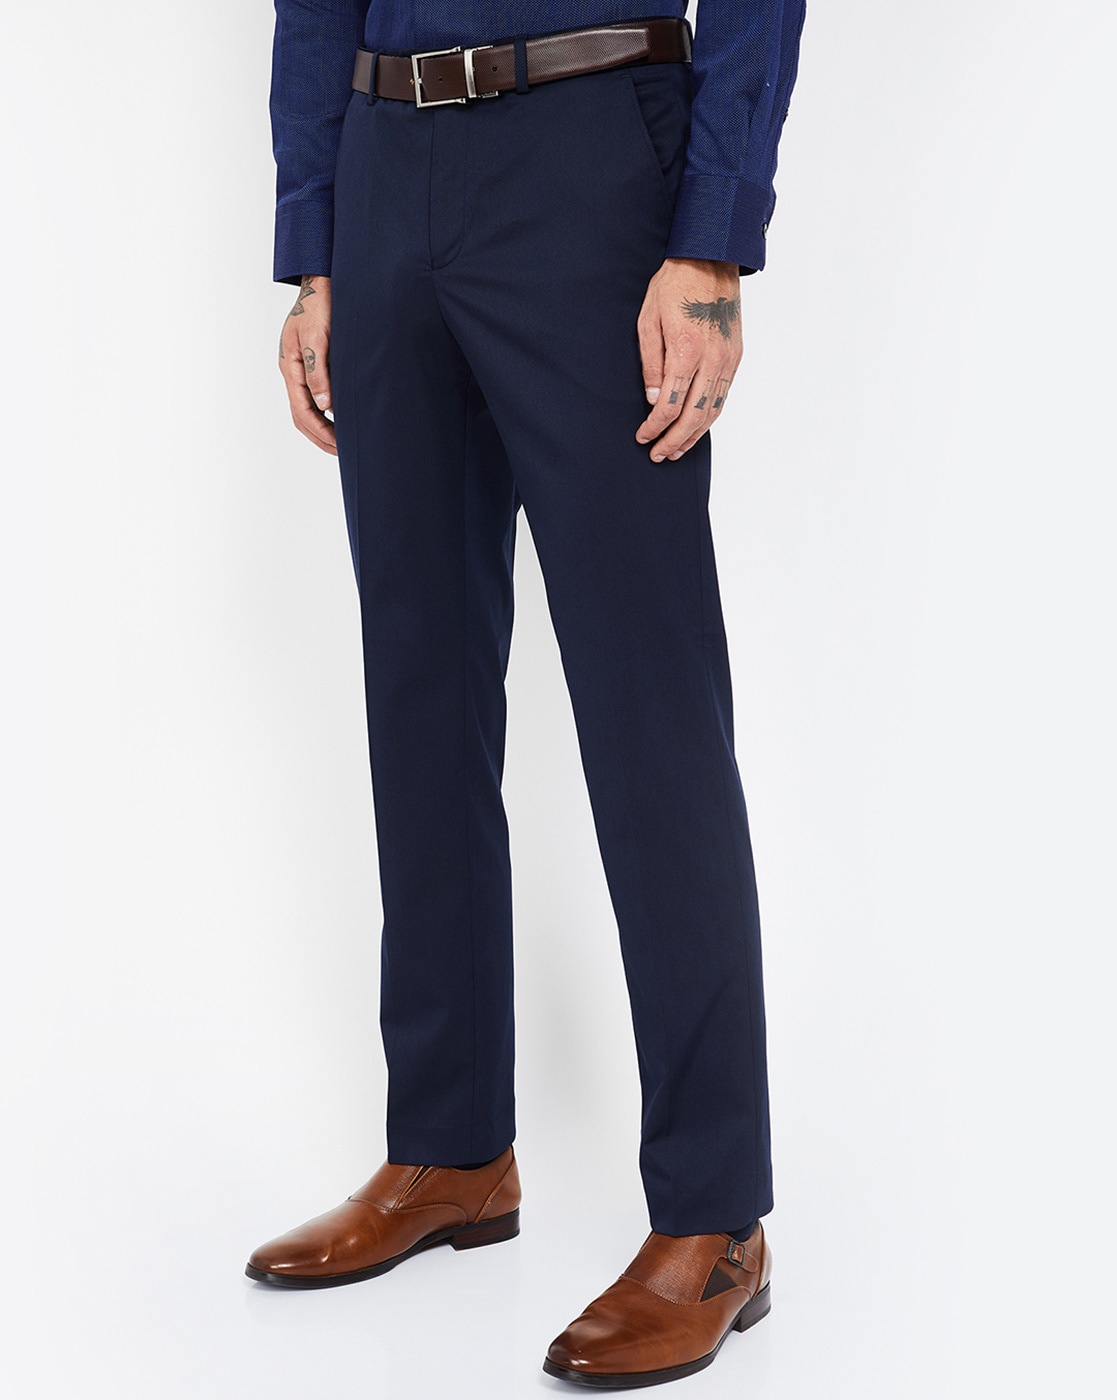 Men's Smart Trouser - Navy Blue | Konga Online Shopping